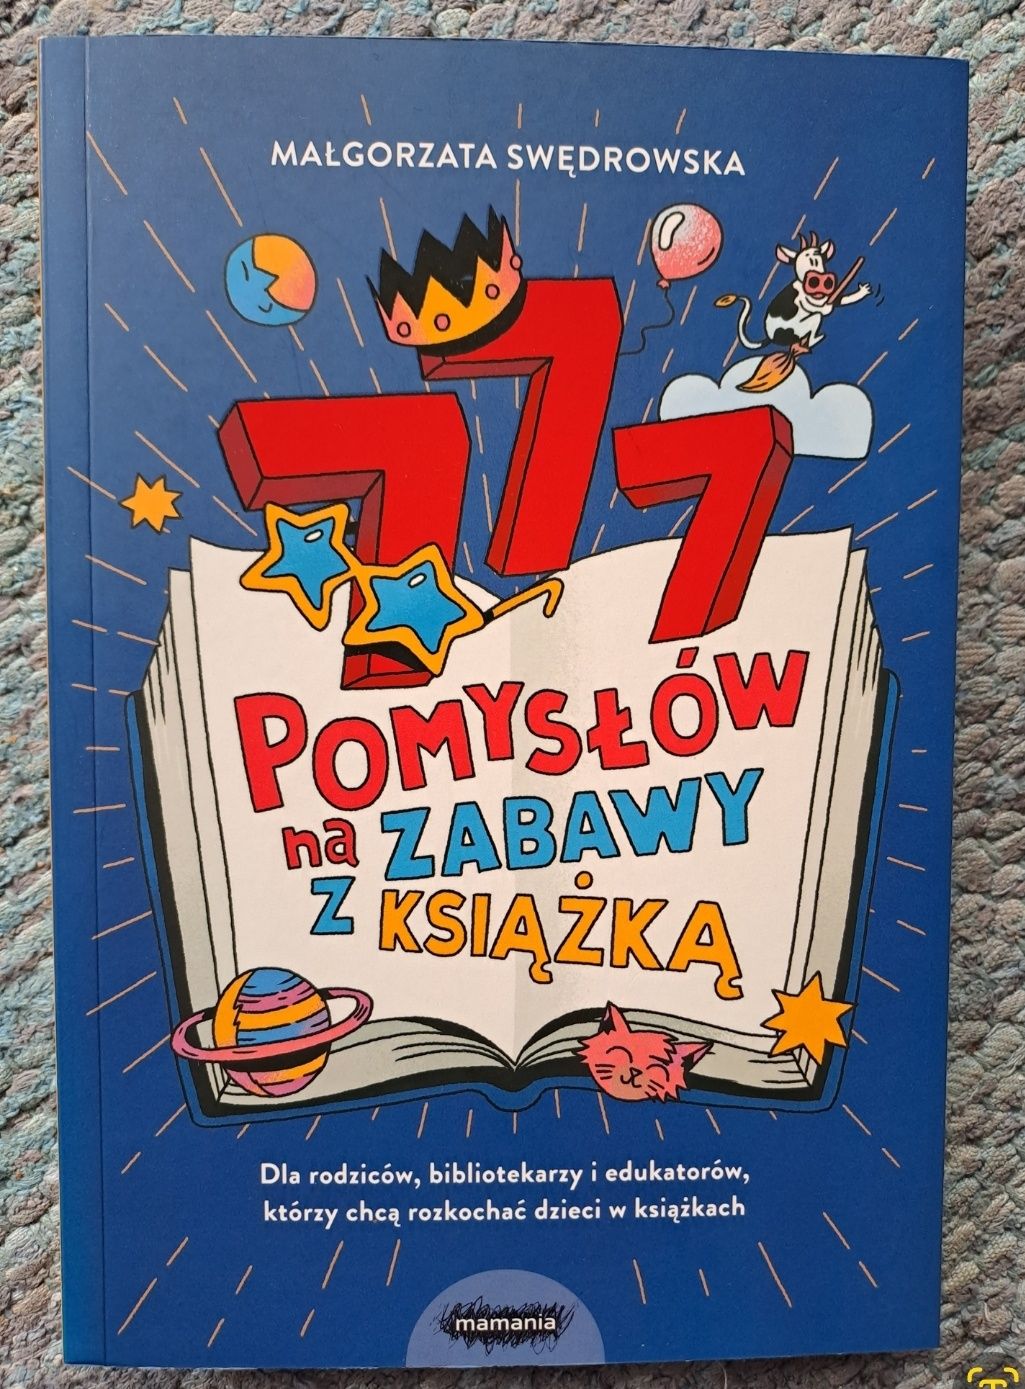 NOWA książka z autografem "777 pomysłów na zabawy z książką" Malgorzat